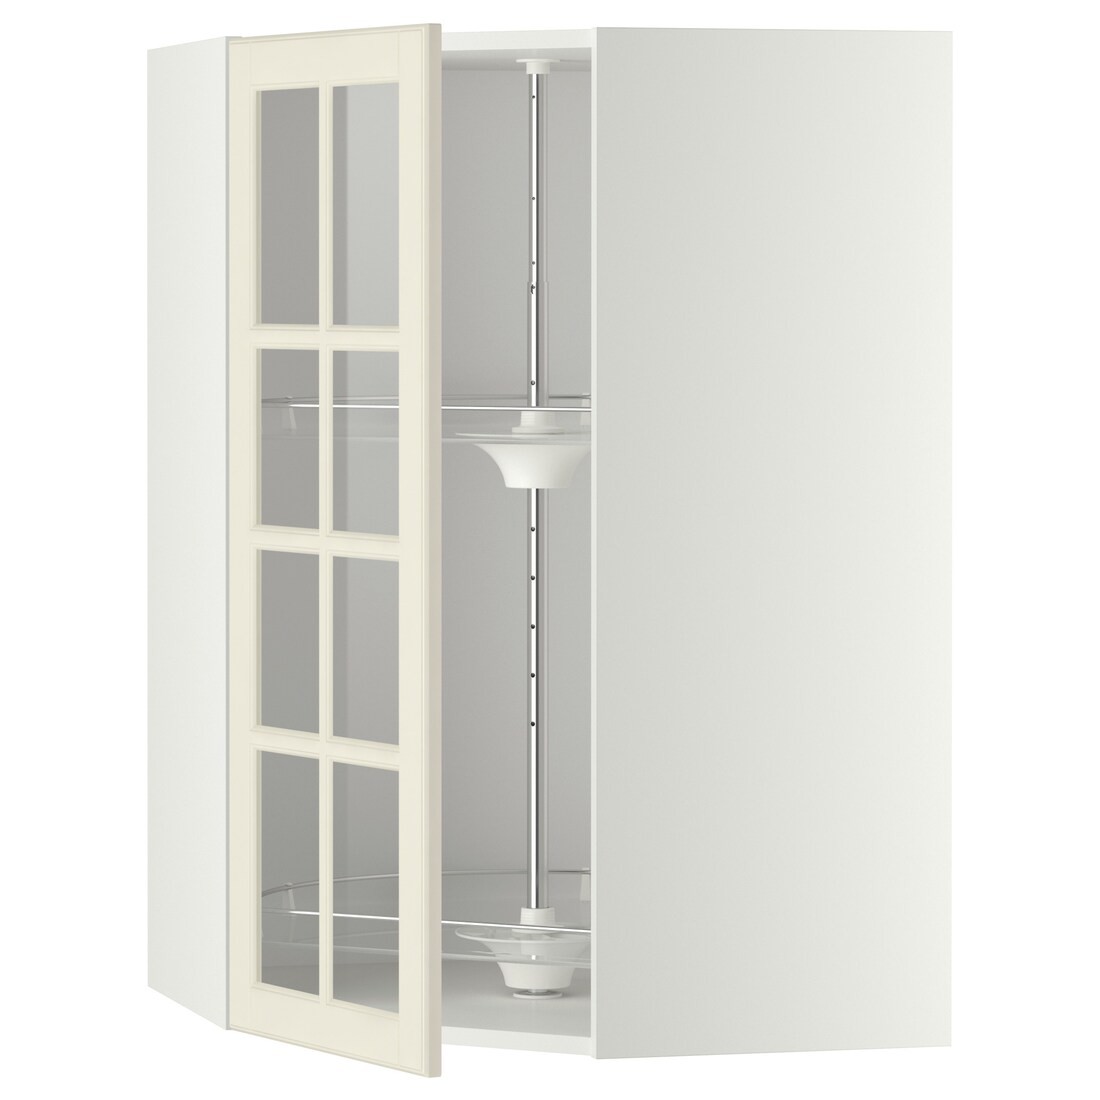 METOD МЕТОД Угловой настенный шкаф с каруселью / стеклянная дверь, белый / Bodbyn кремовый, 68x100 см